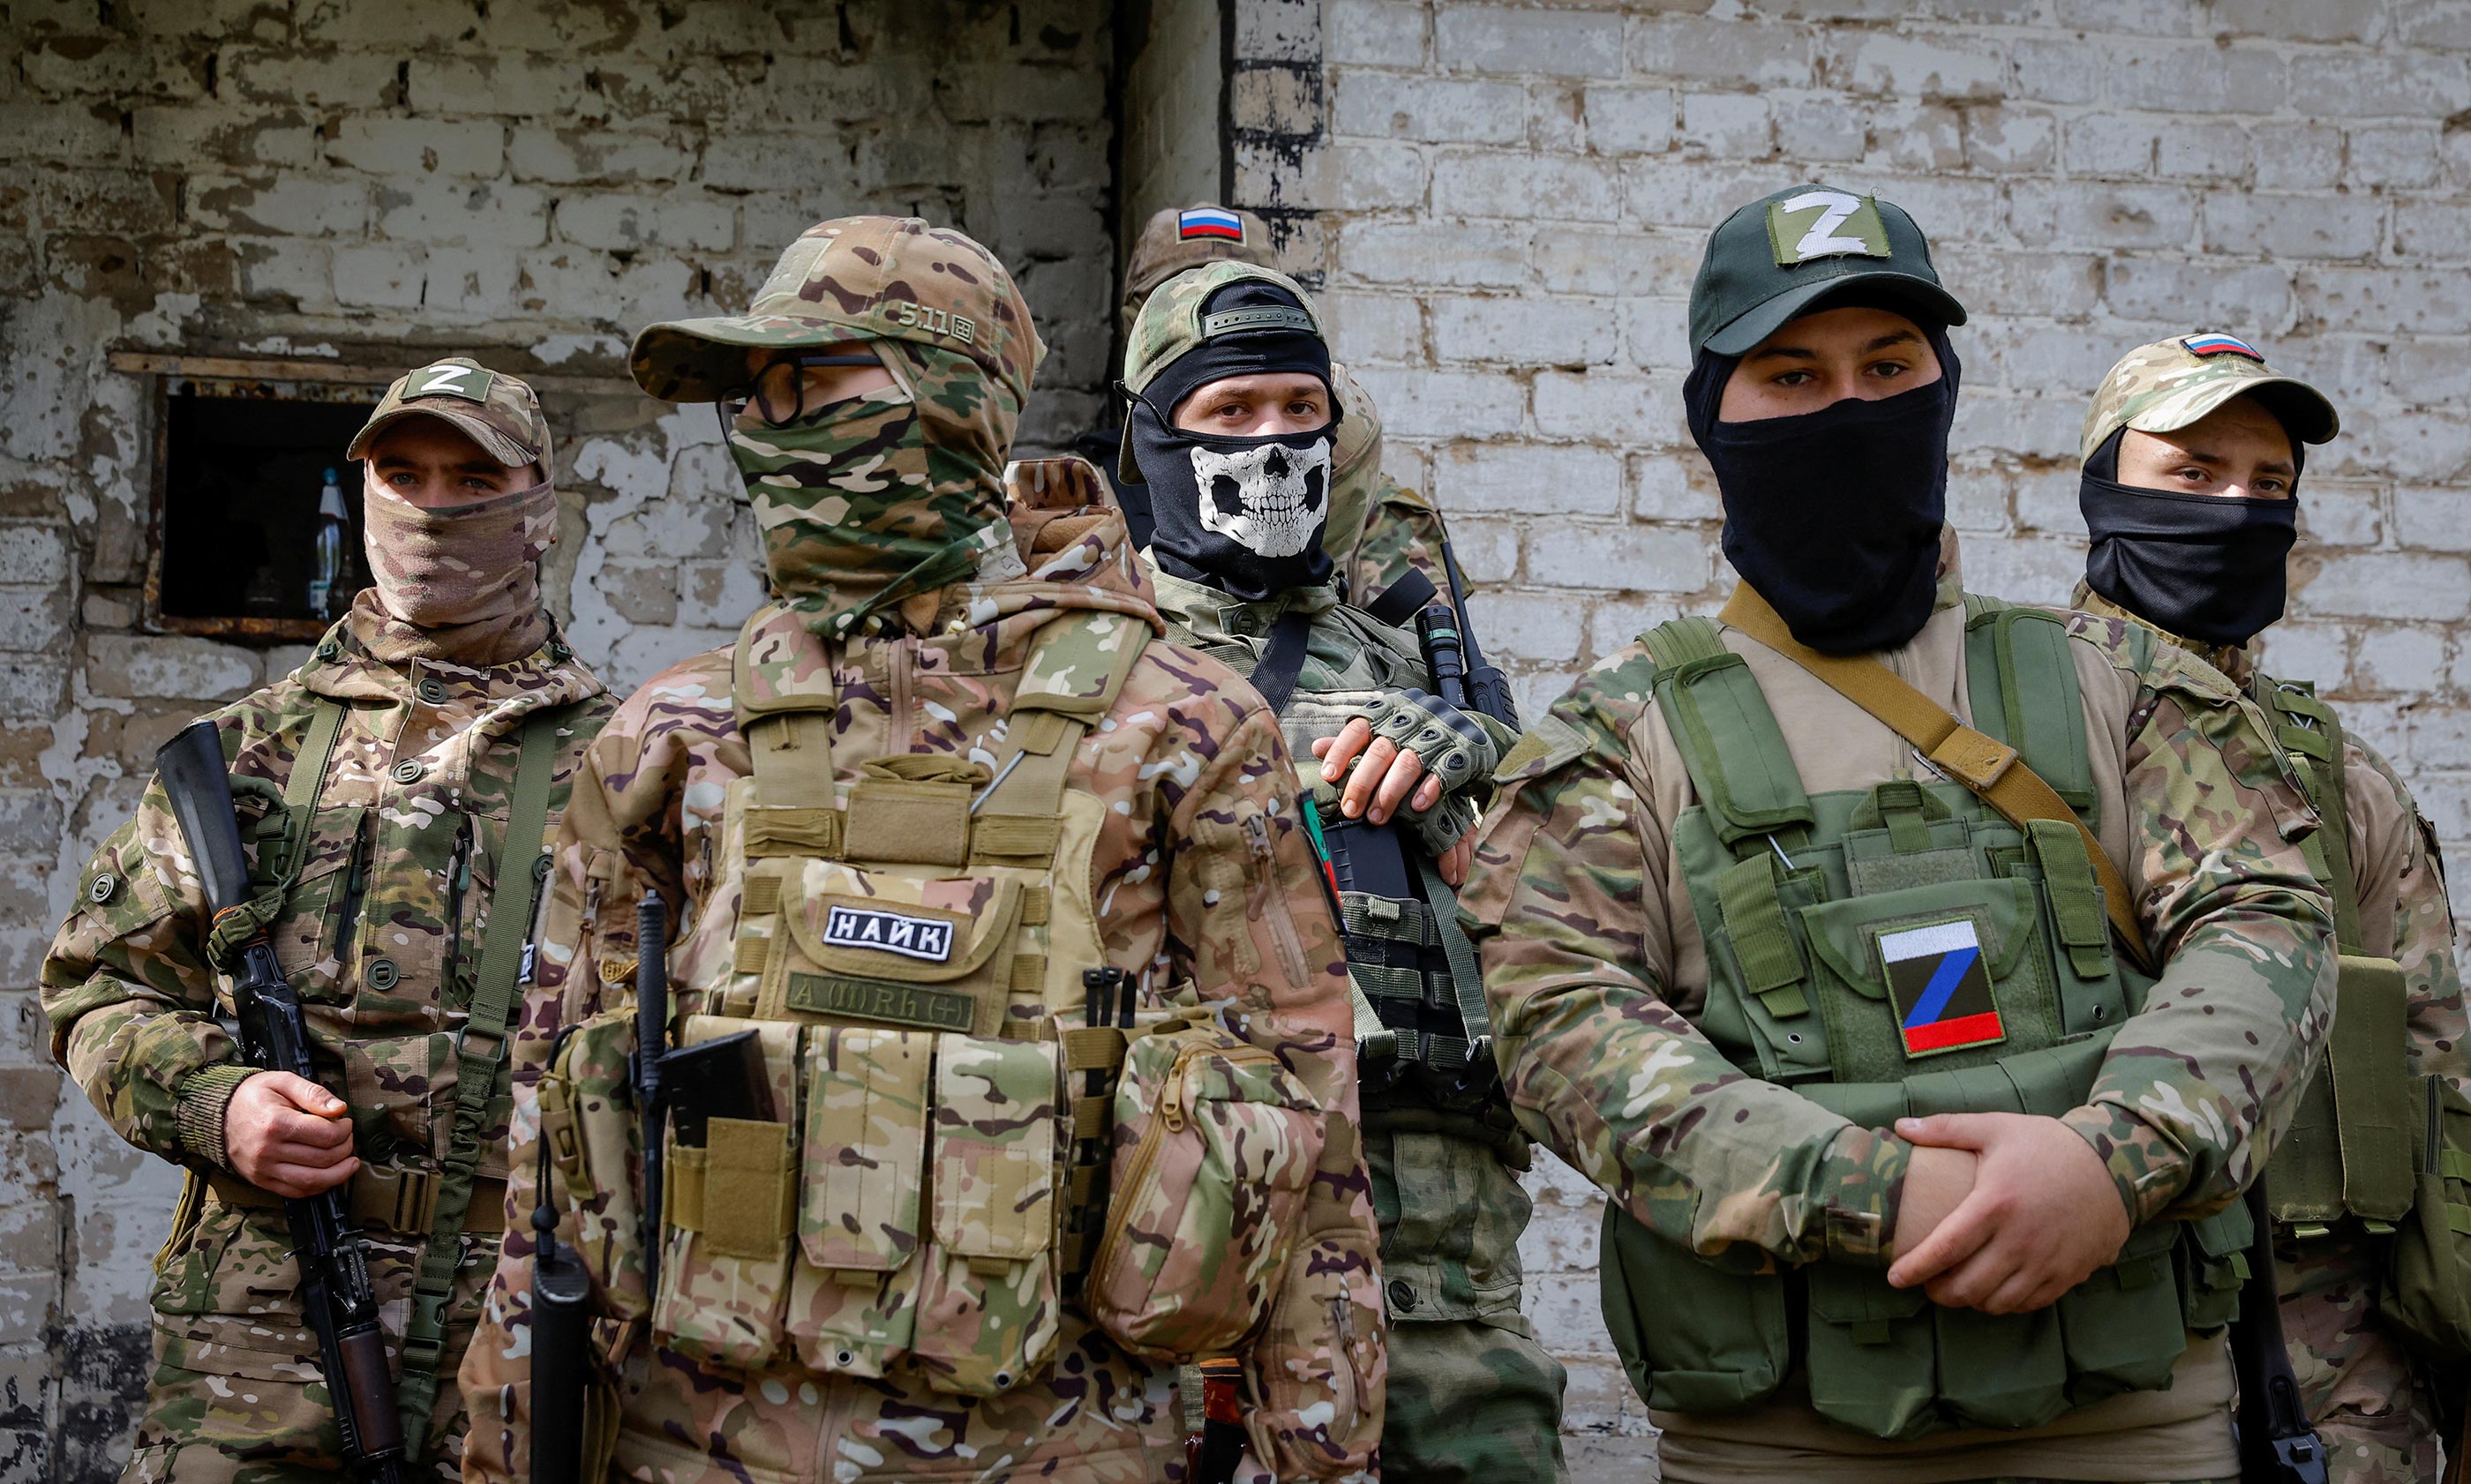 Bitke na jugu i istoku: Ukrajinske snage napreduju u Hersonu, evakuacija je u tijeku, ali ruske snage osvajaju naselja na istoku, nadomak Bahmuta - ovo je prvi ruski konkretan napredak na terenu